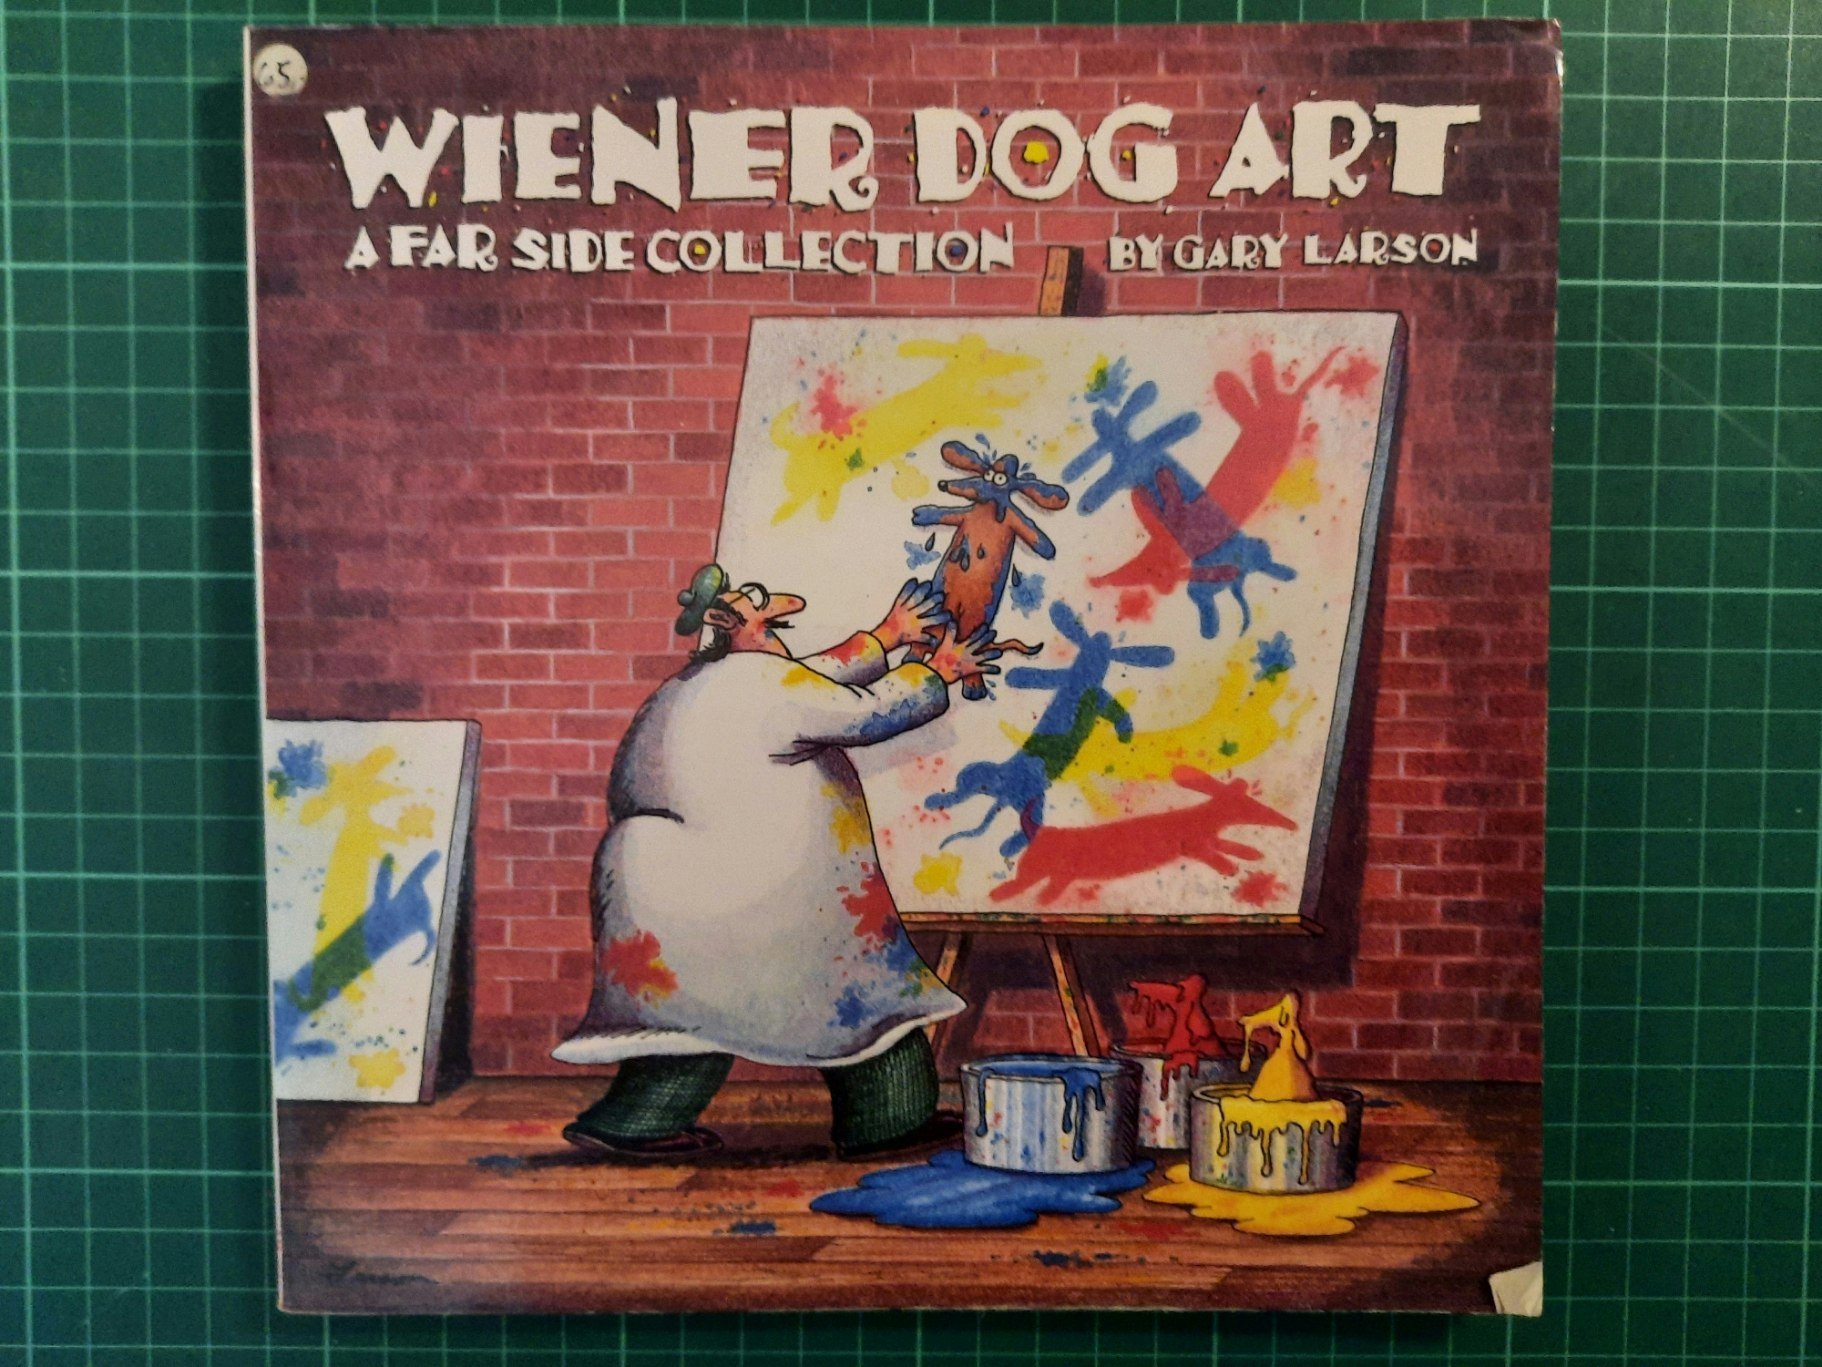 Far Side : Wiener dog art